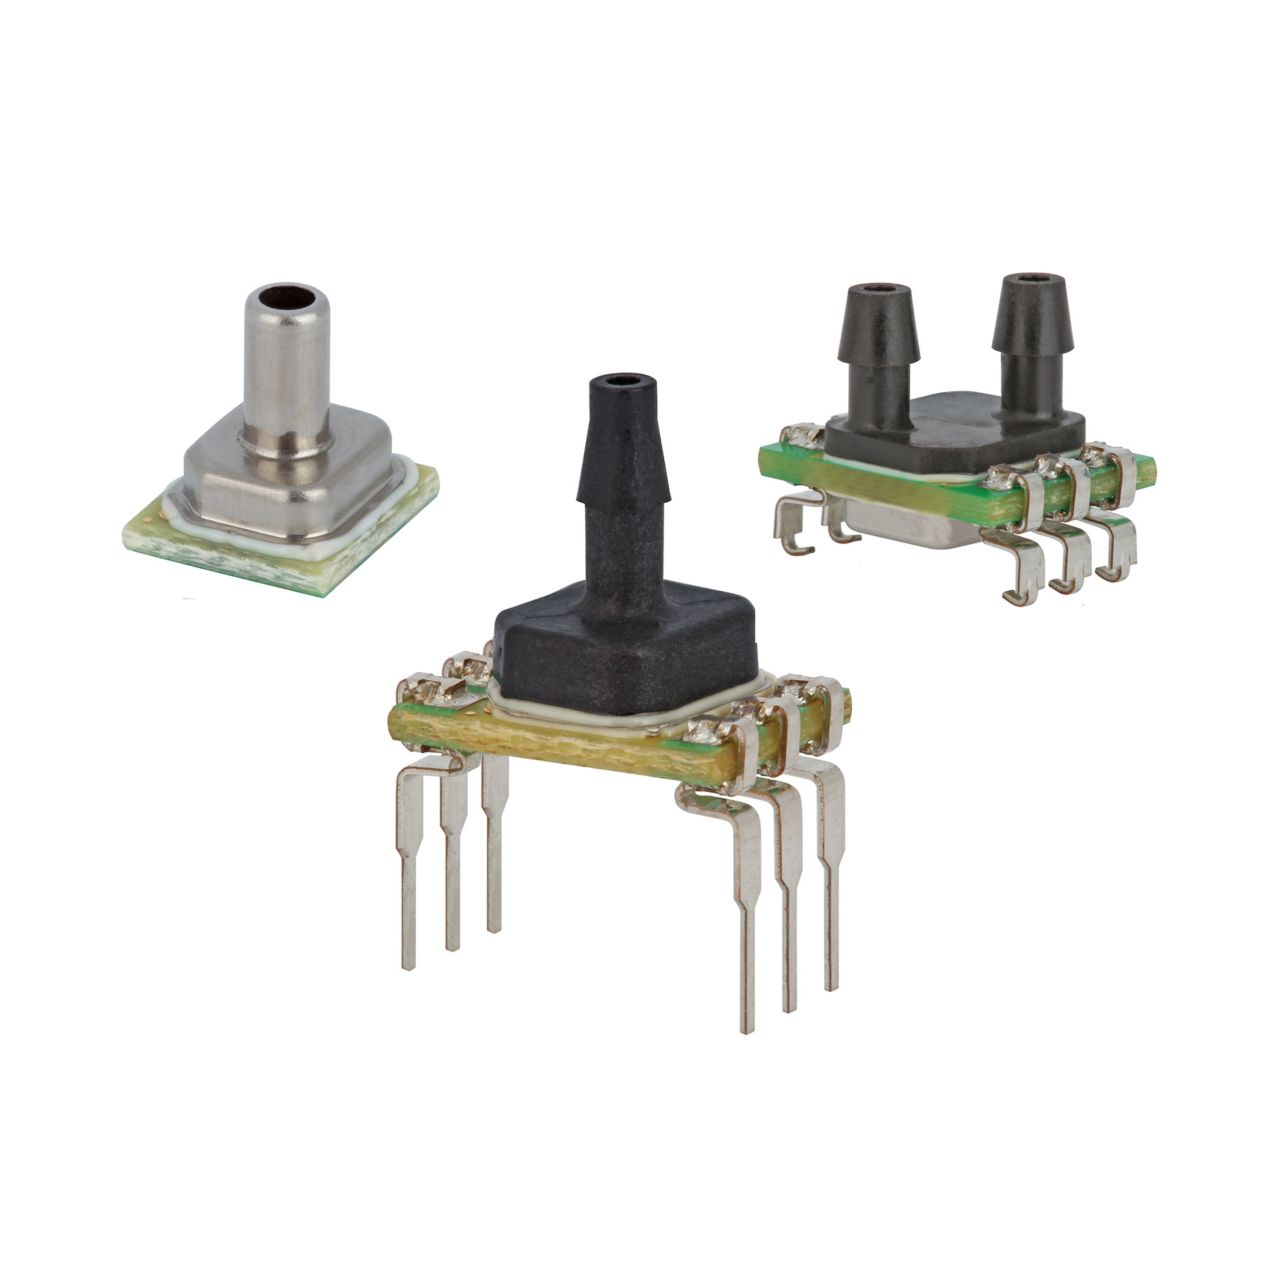 ABP2 Series Pressure Sensors